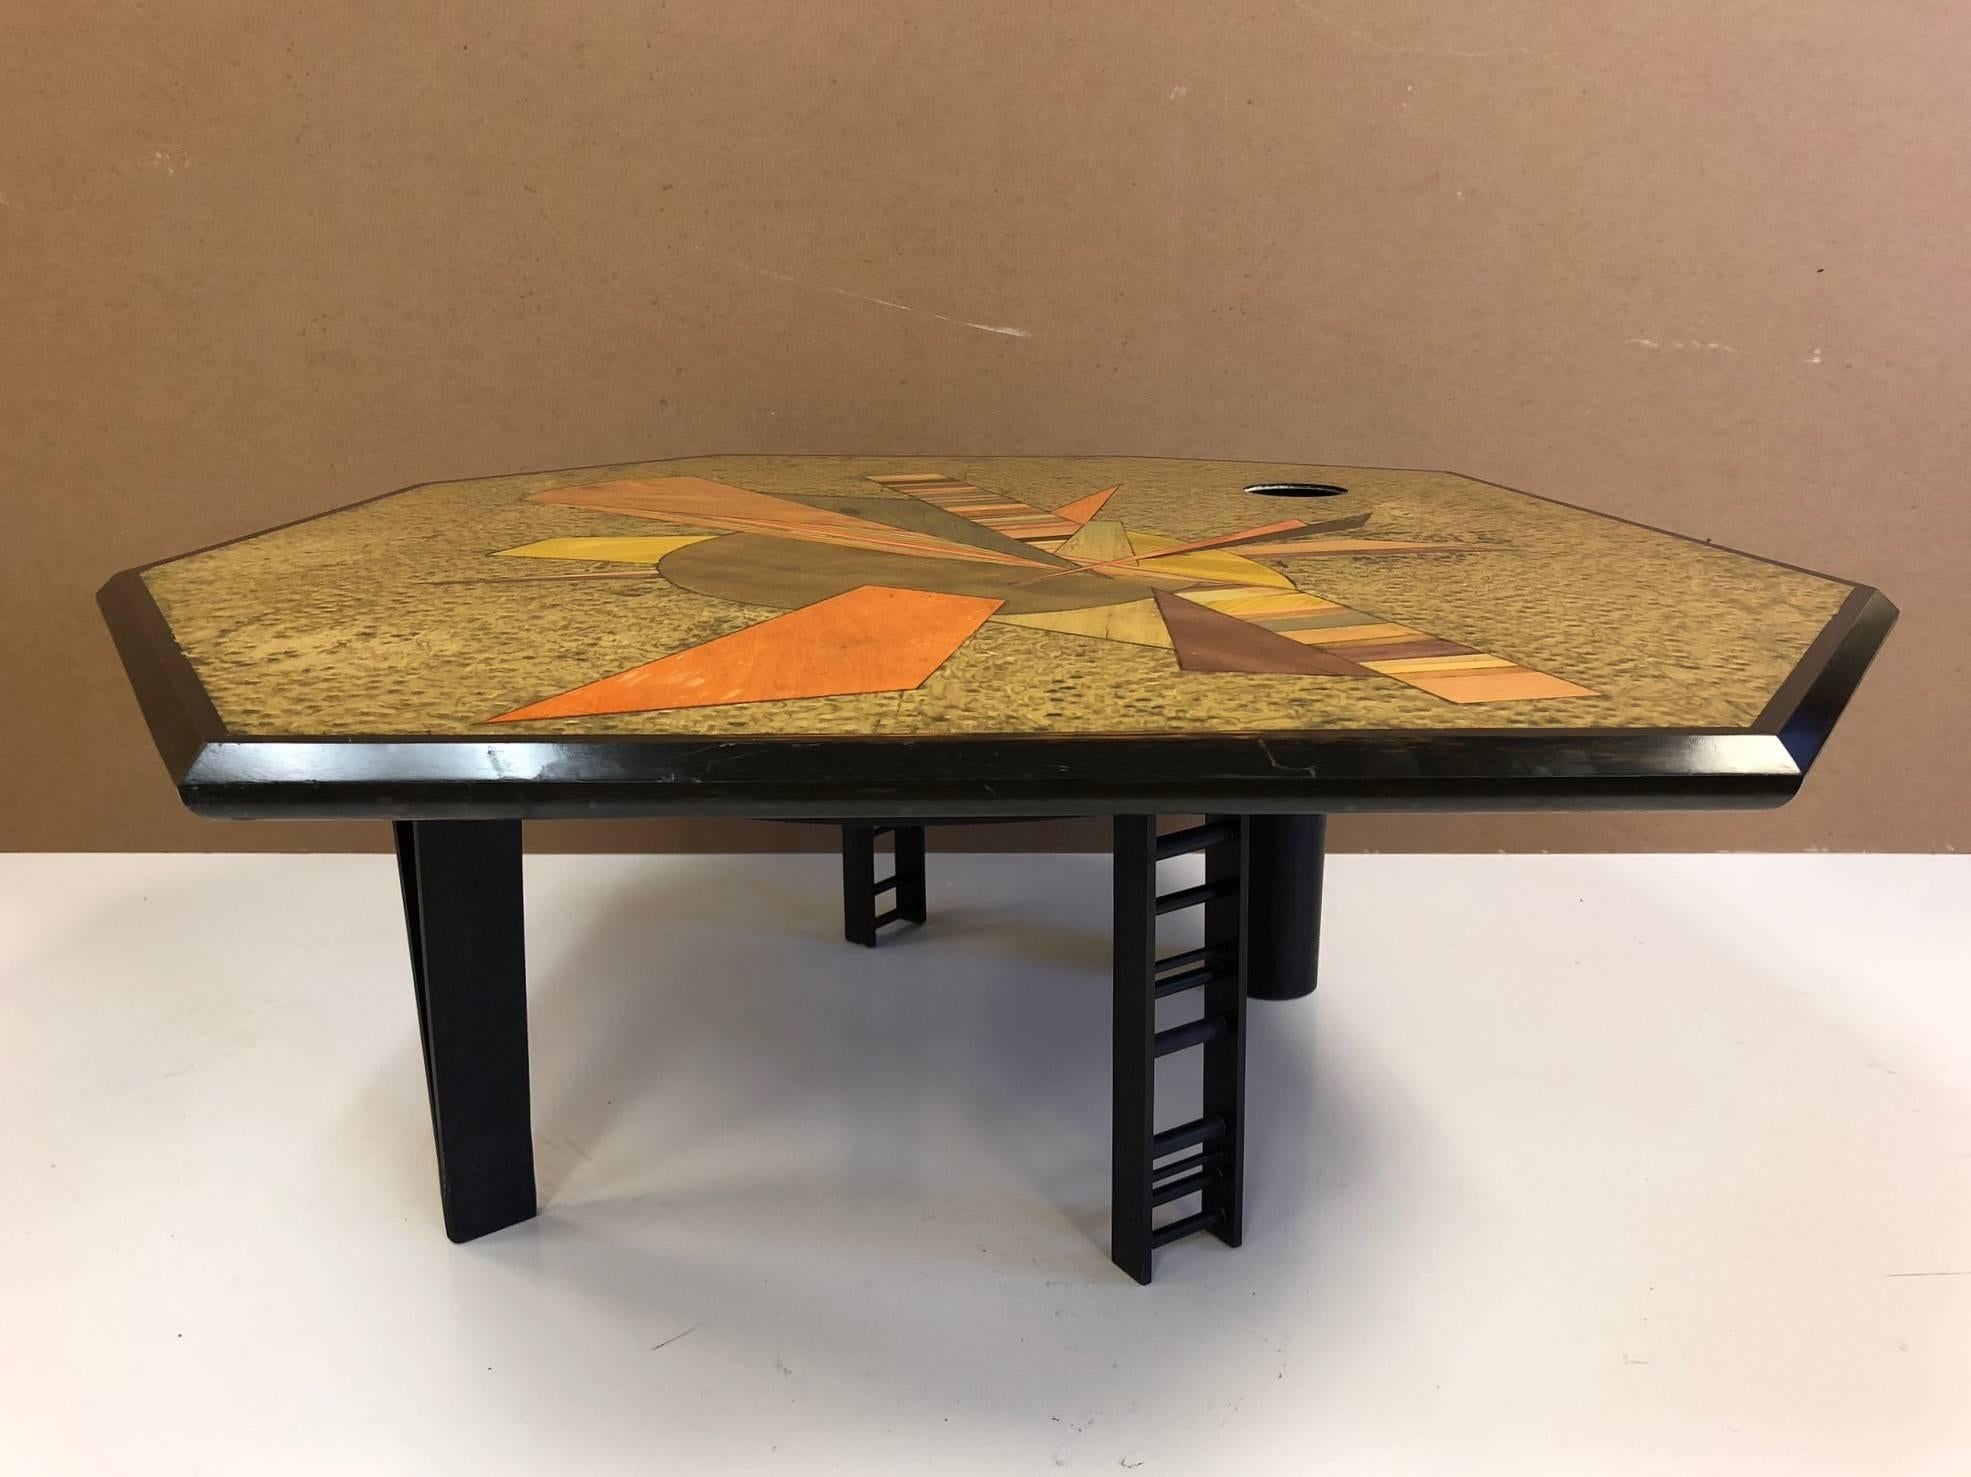 Table basse marquetée signée Jay Stanger, avec des placages teintés sur le dessus et une base en acier peint. La table a une forme géométrique.